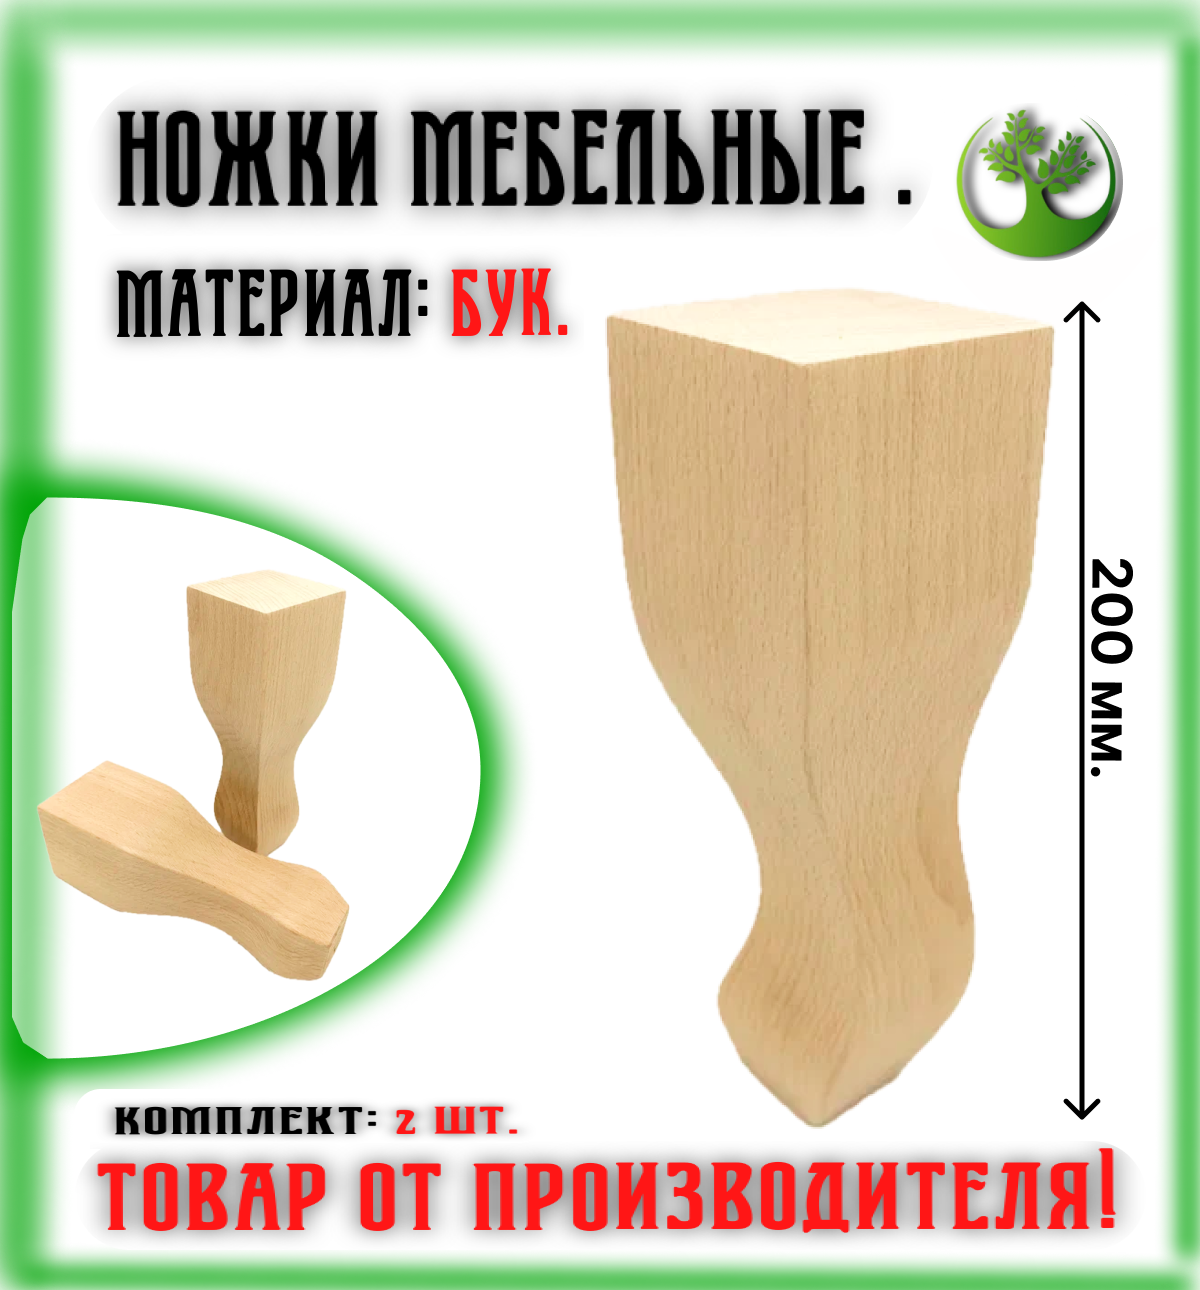 Ножки для мебели деревянные 200 мм. (2 шт.) / Опоры мебельные бук 200 мм. (2 шт.)